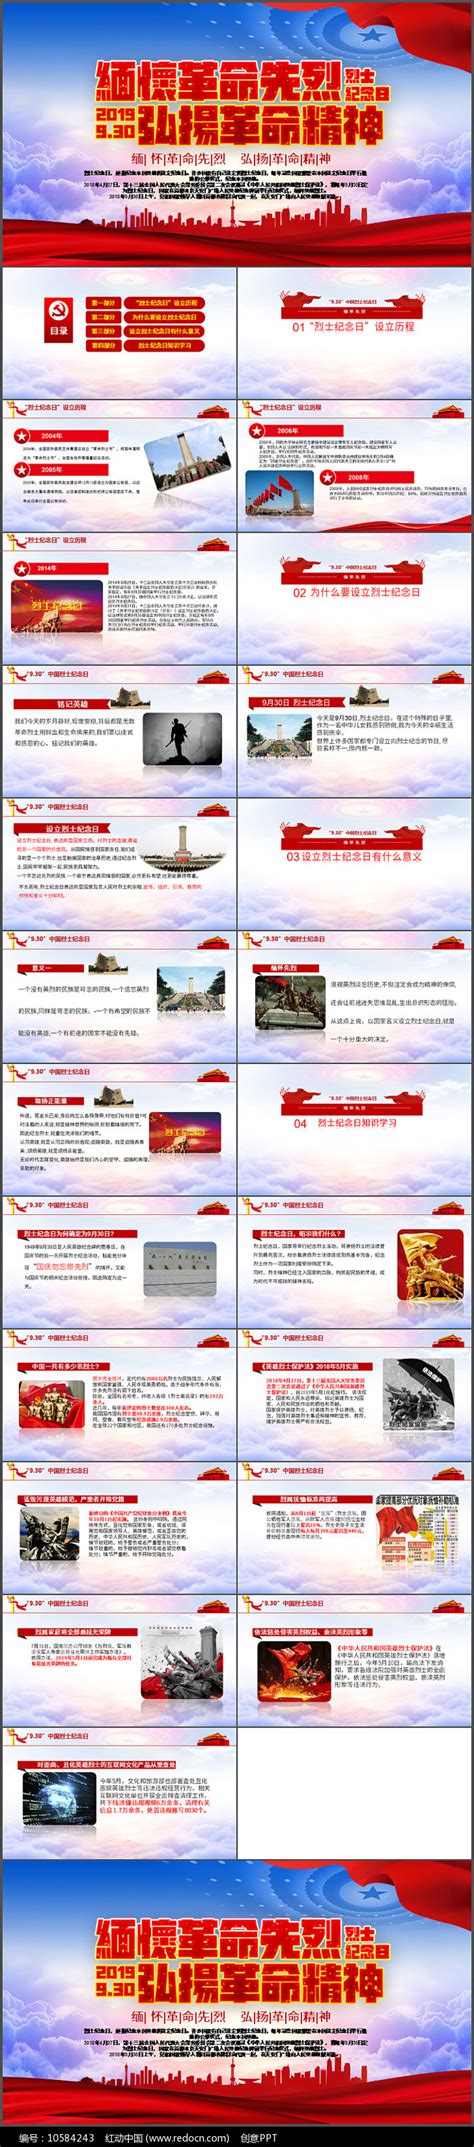 9月30日烈士纪念日PPT下载_红动中国